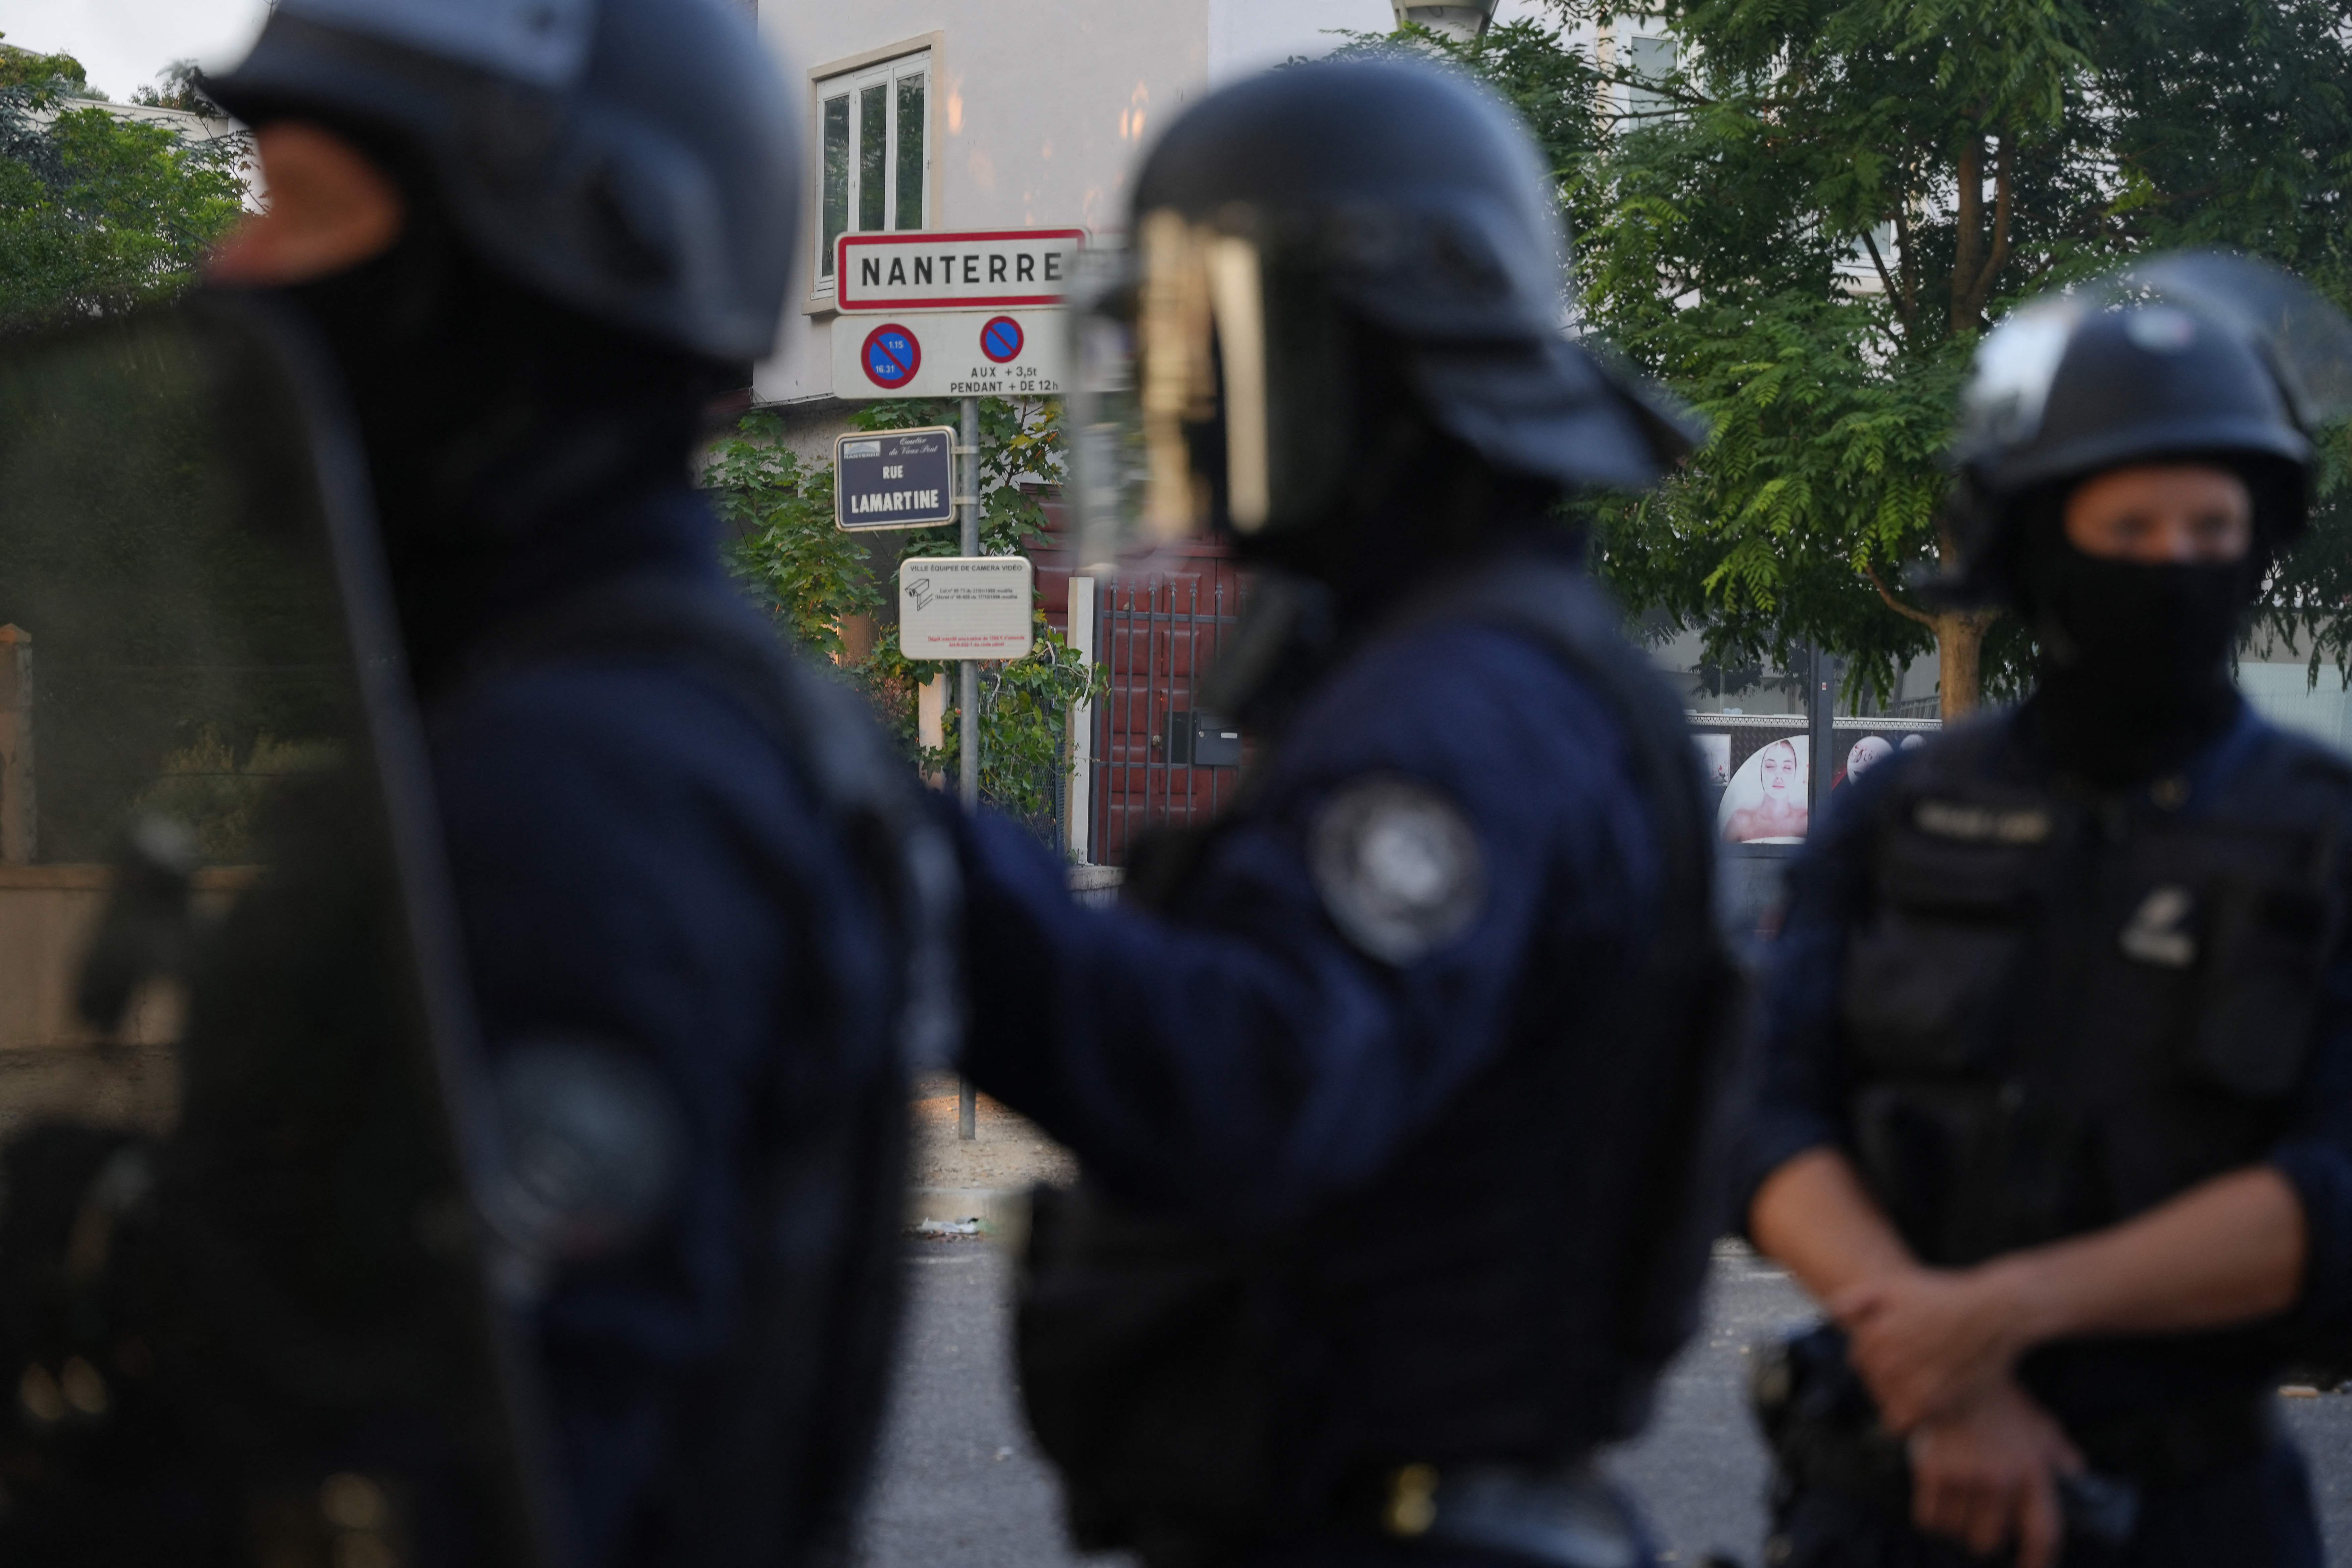 Polizisten in Kampfausrüstung standen nach den Protesten Wache